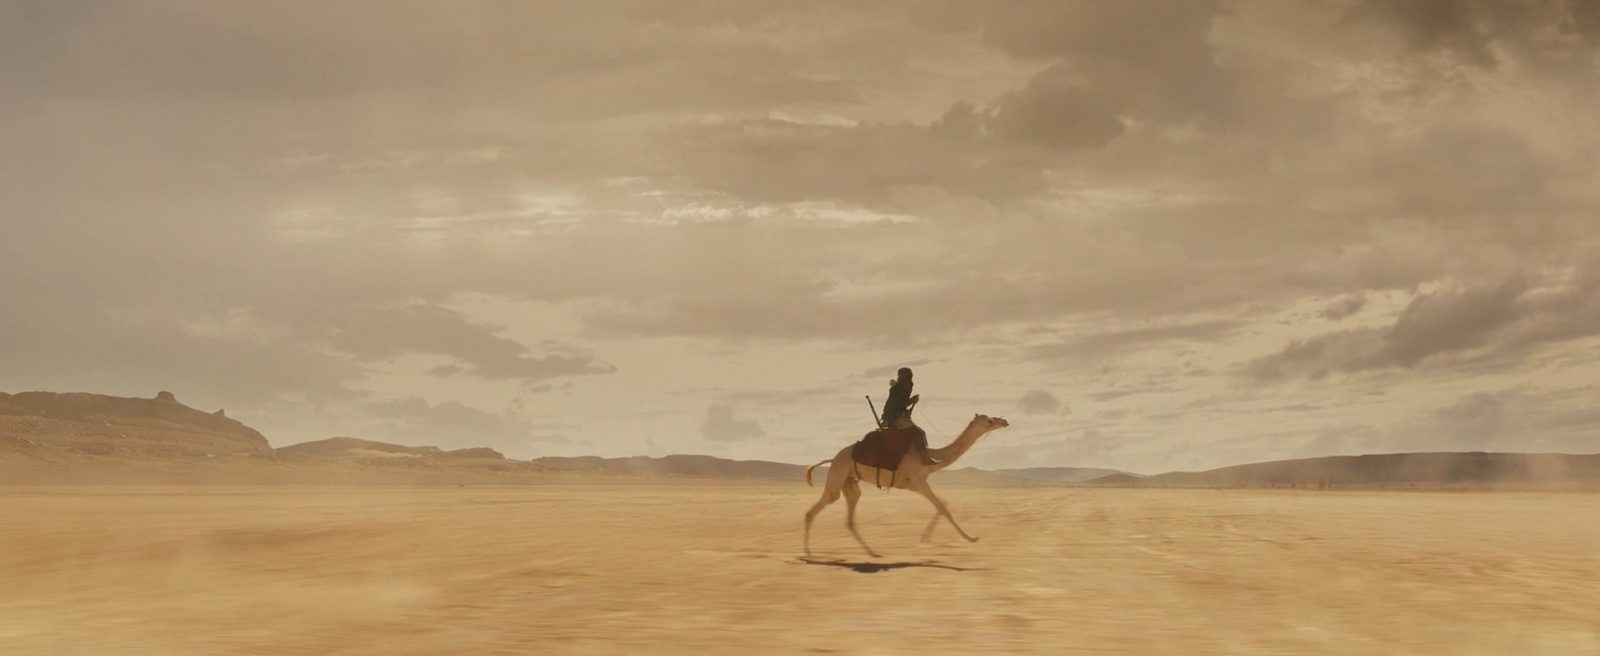 Песчаная буря и погоня на верблюде в эксклюзивном фрагменте фильма «Принц пустыни»